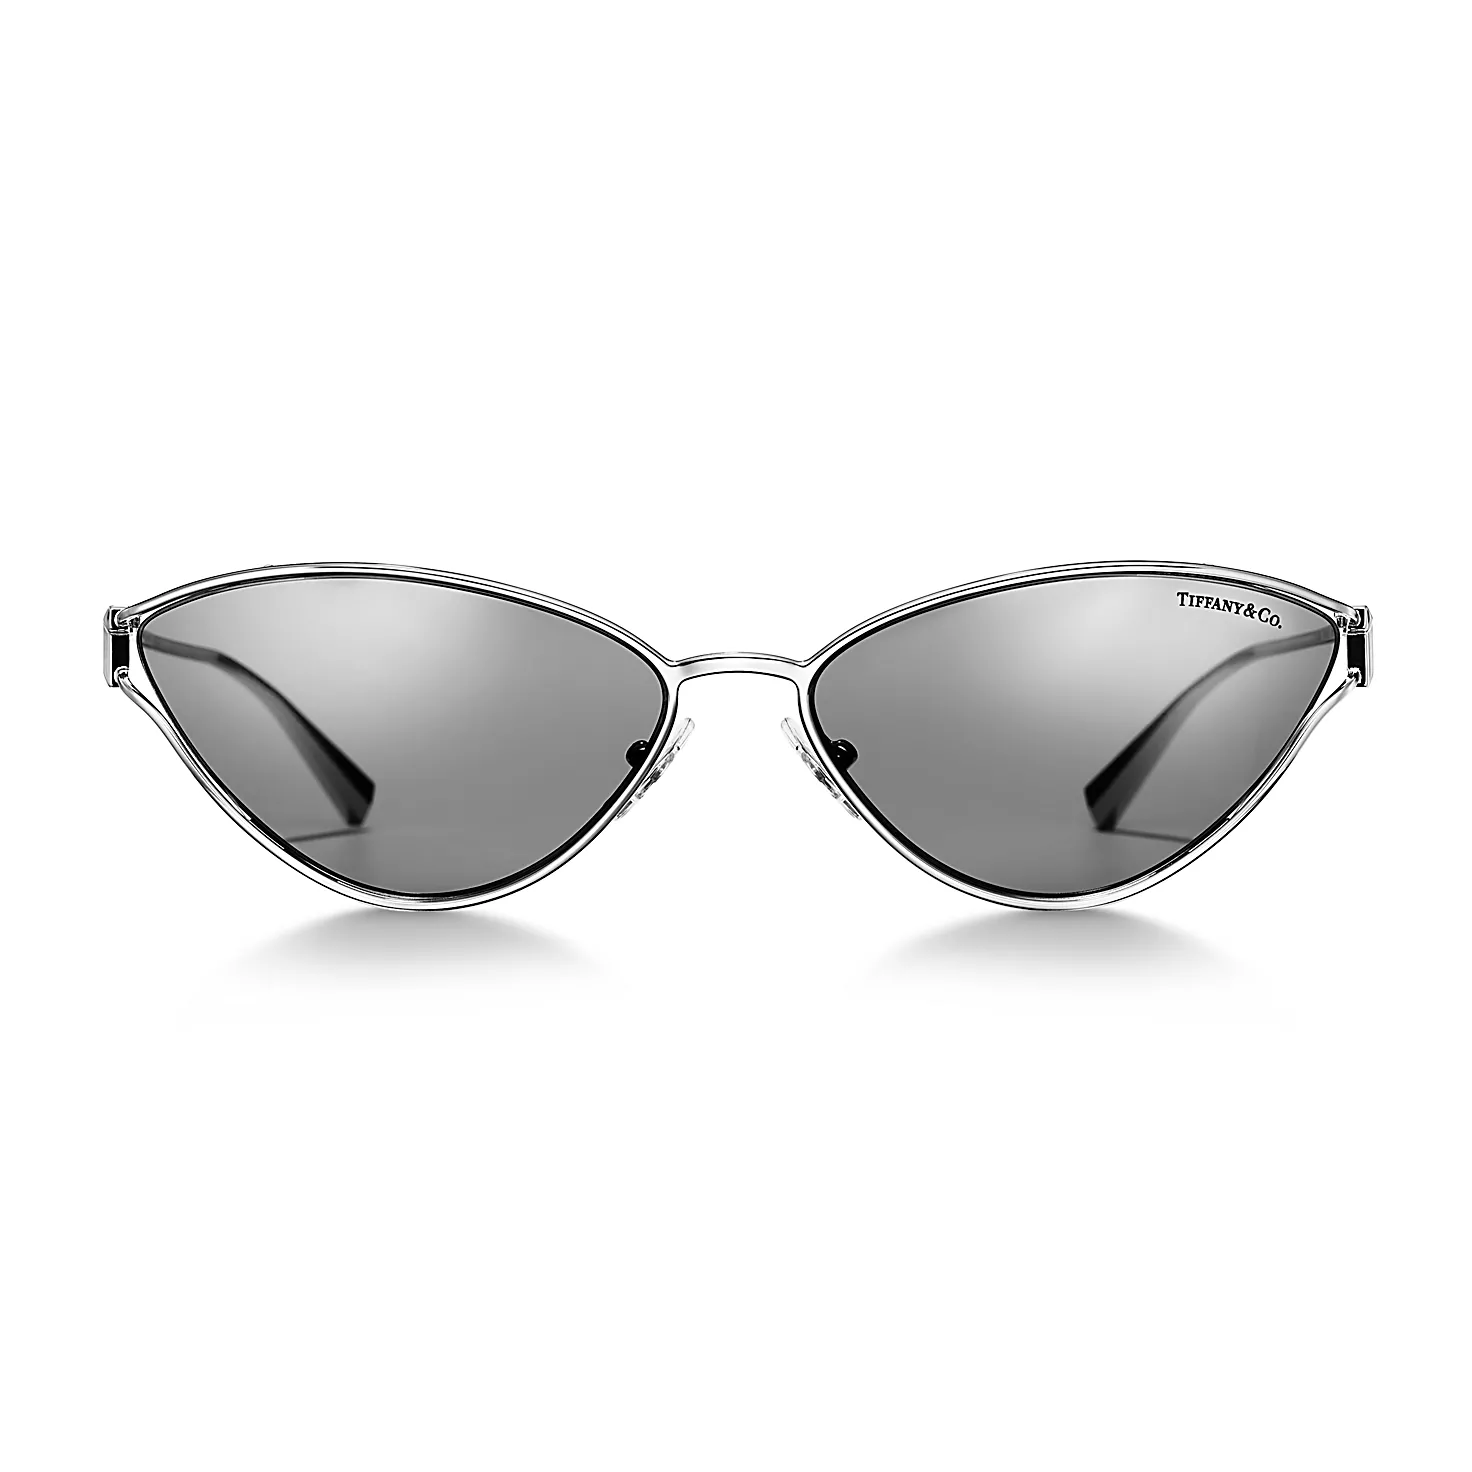 Tiffany T:선글라스, 실버 컬러 메탈, 라이트 그레이 미러 렌즈 세팅 이미지 번호 2